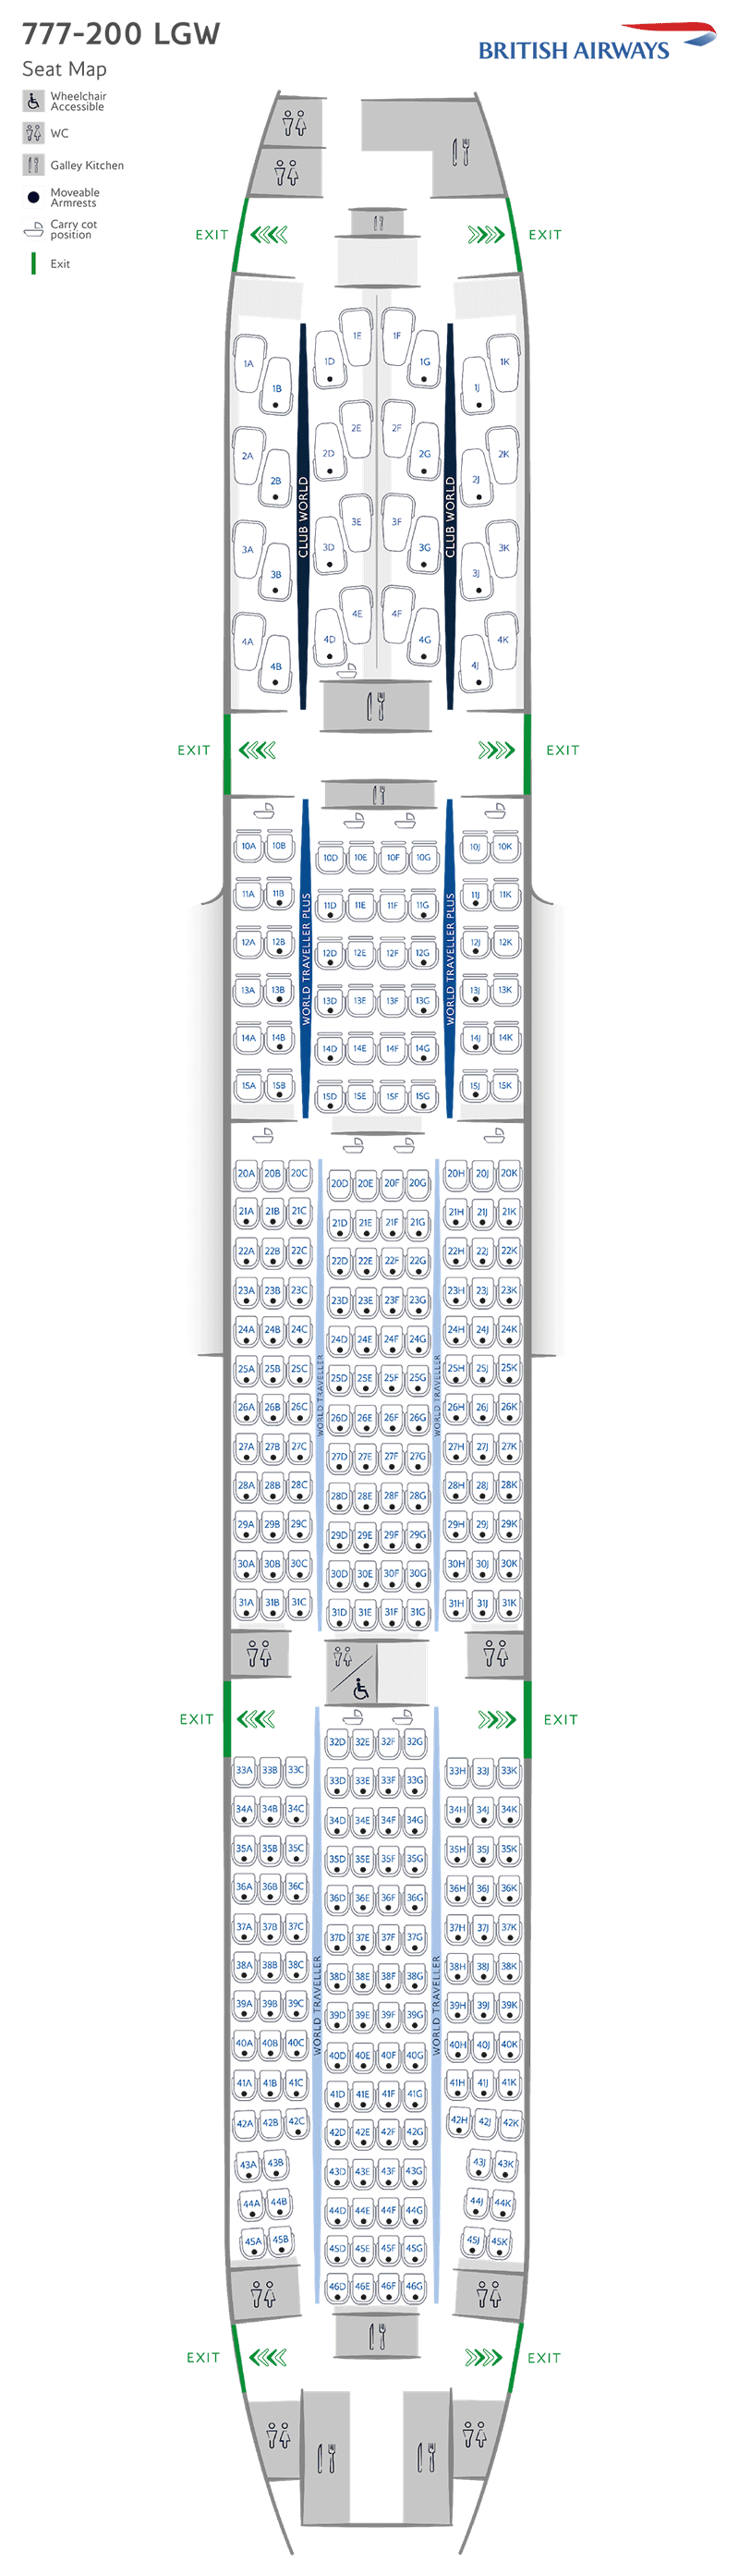 B777-200LGW seatmap